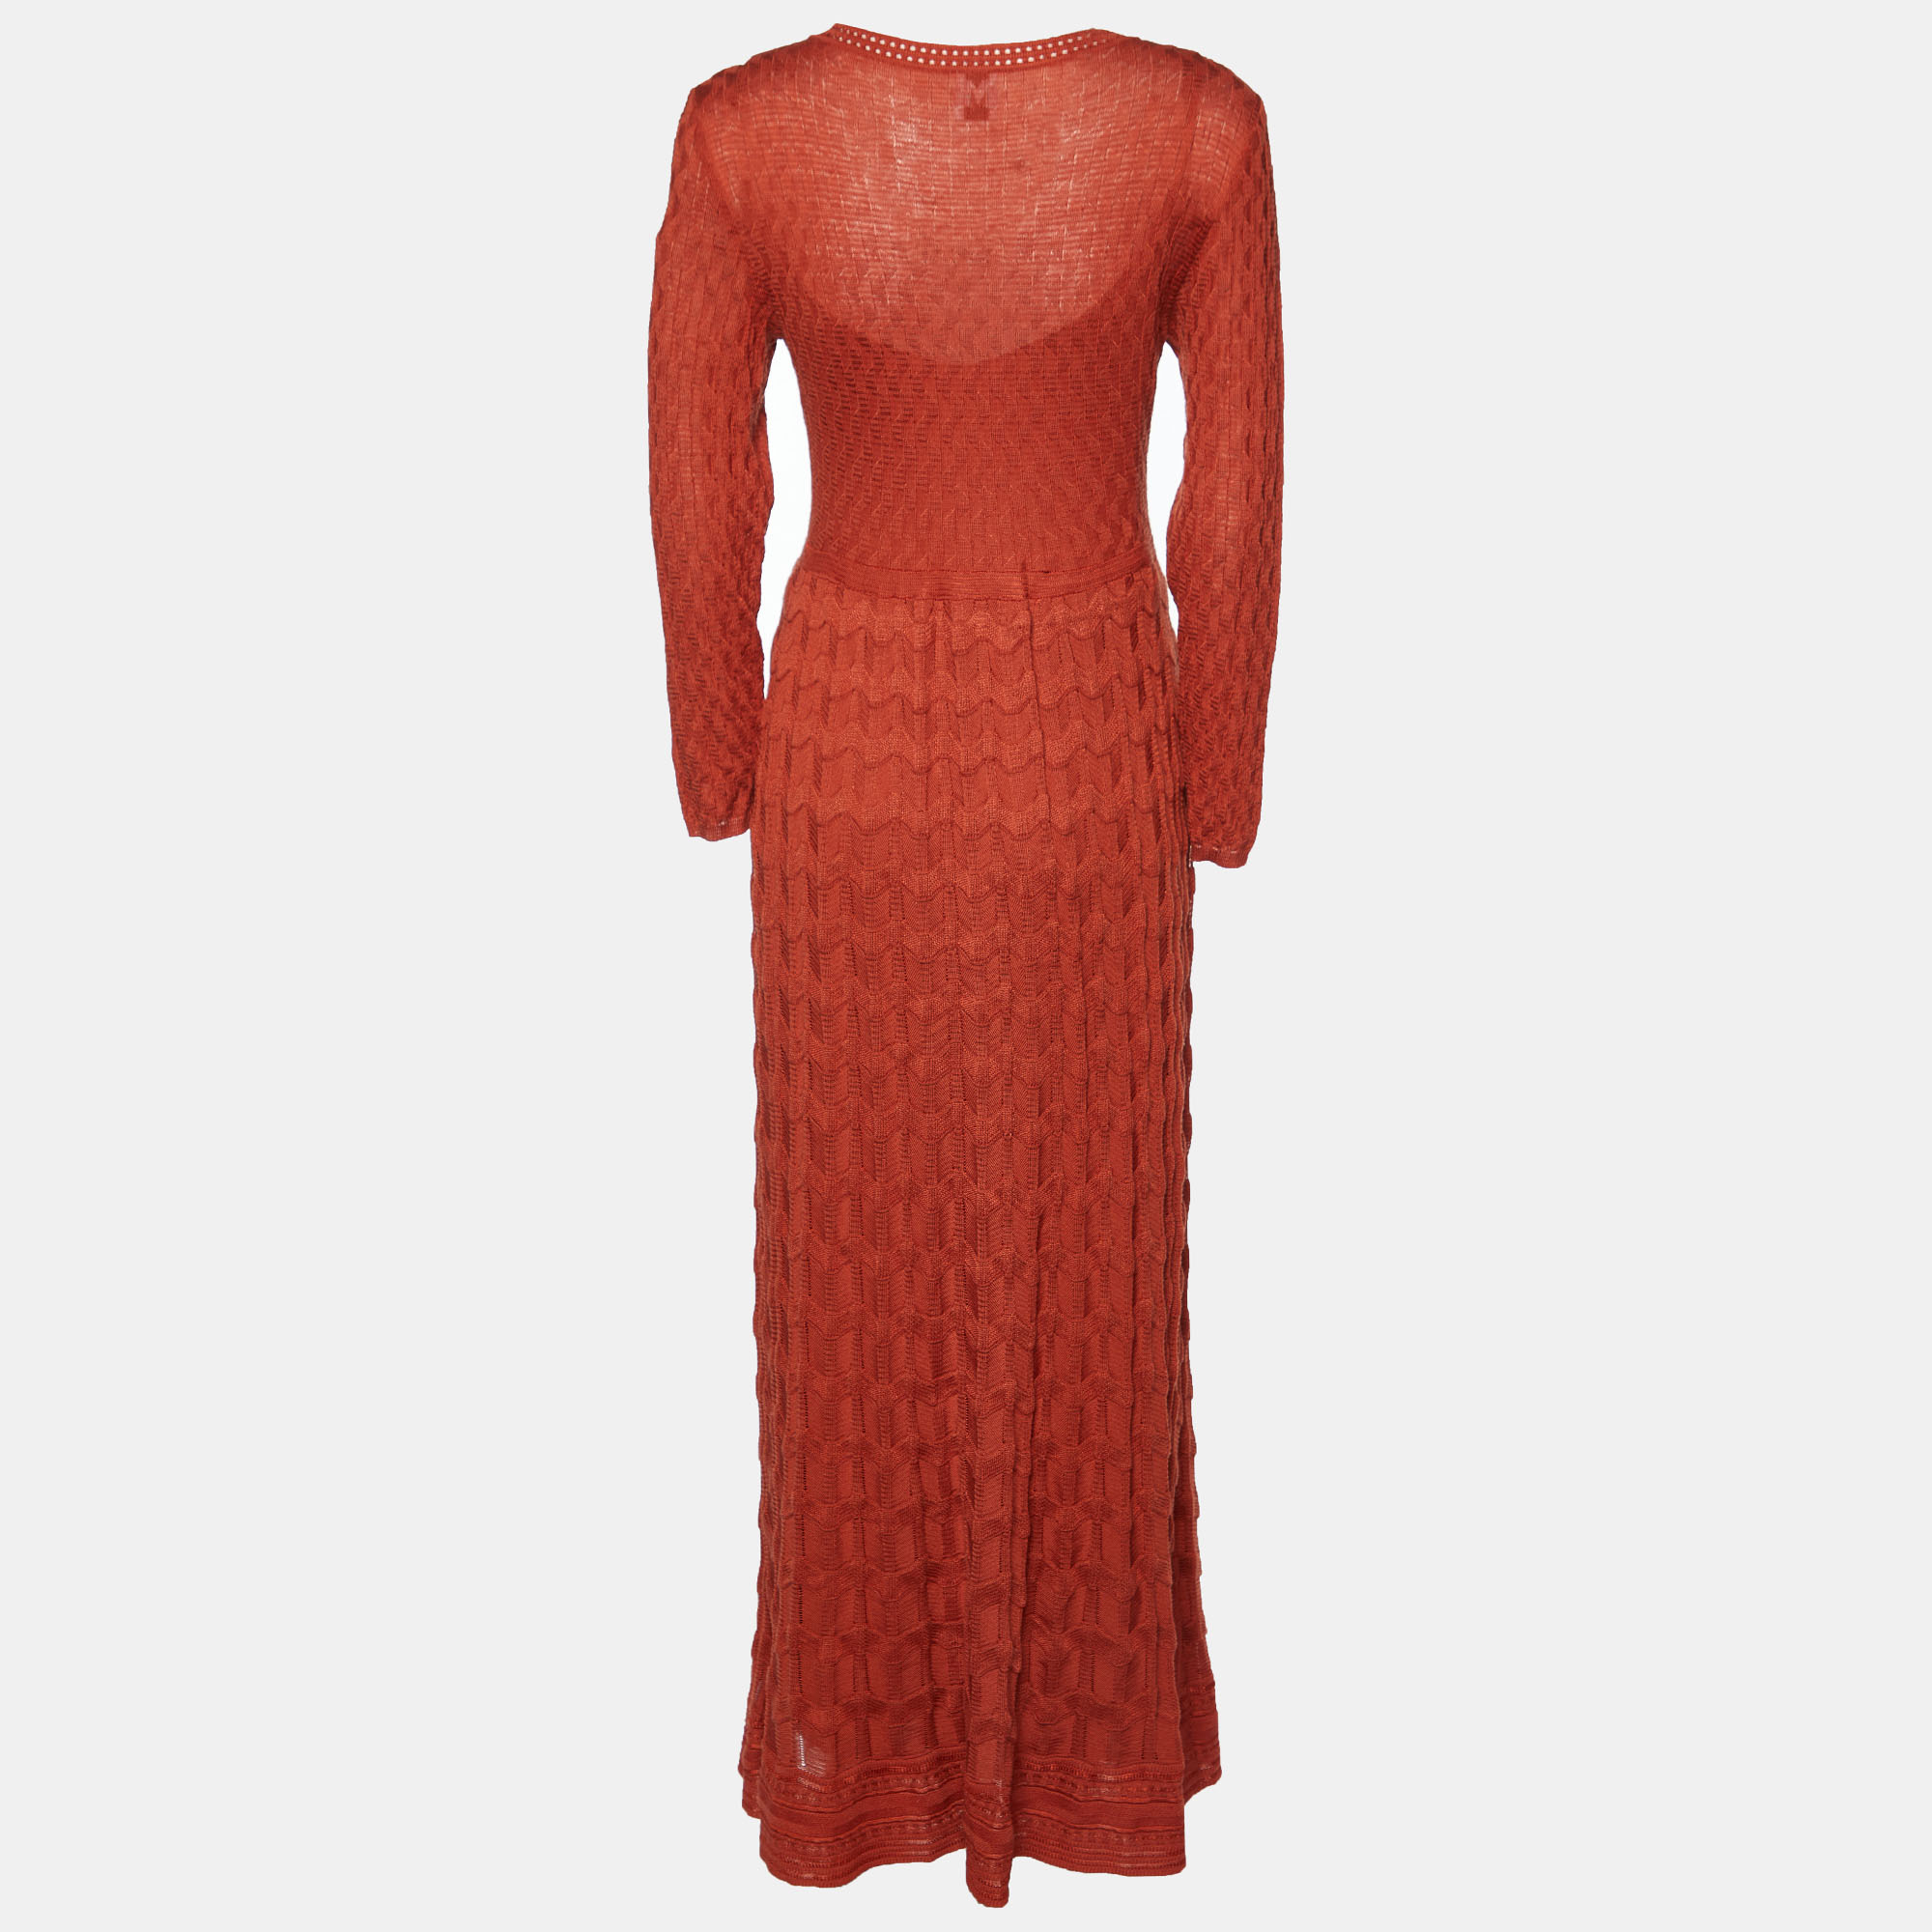 

M Missoni Brick Red Textured Knit Long Sleeve Maxi Dress